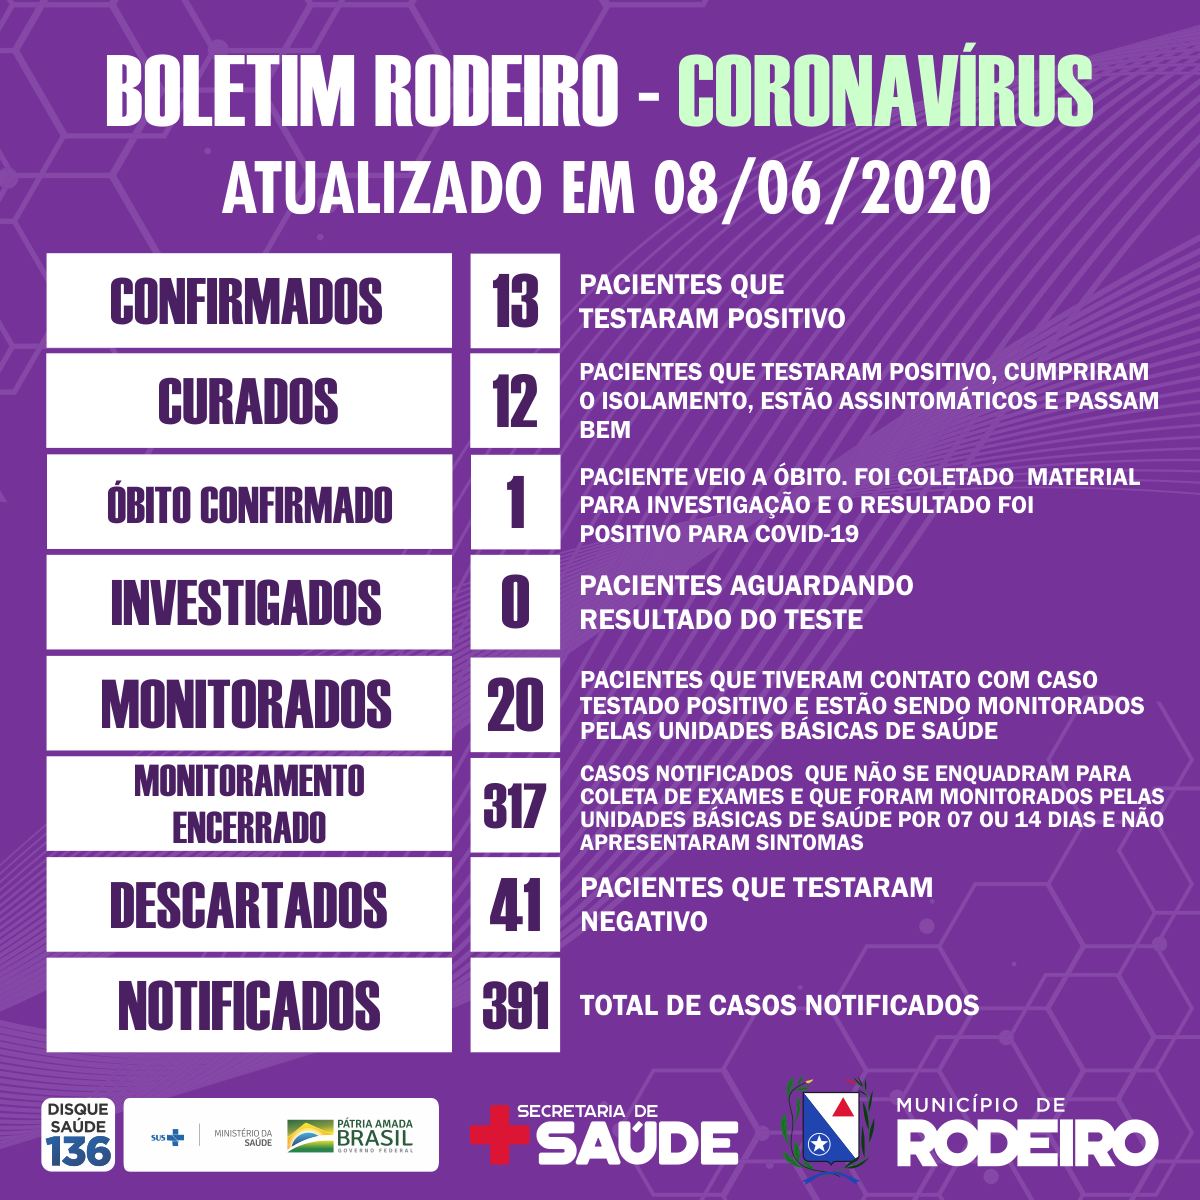 Boletim epidemiológico do Município de Rodeiro coronavírus, atualizado em 08/06/2020